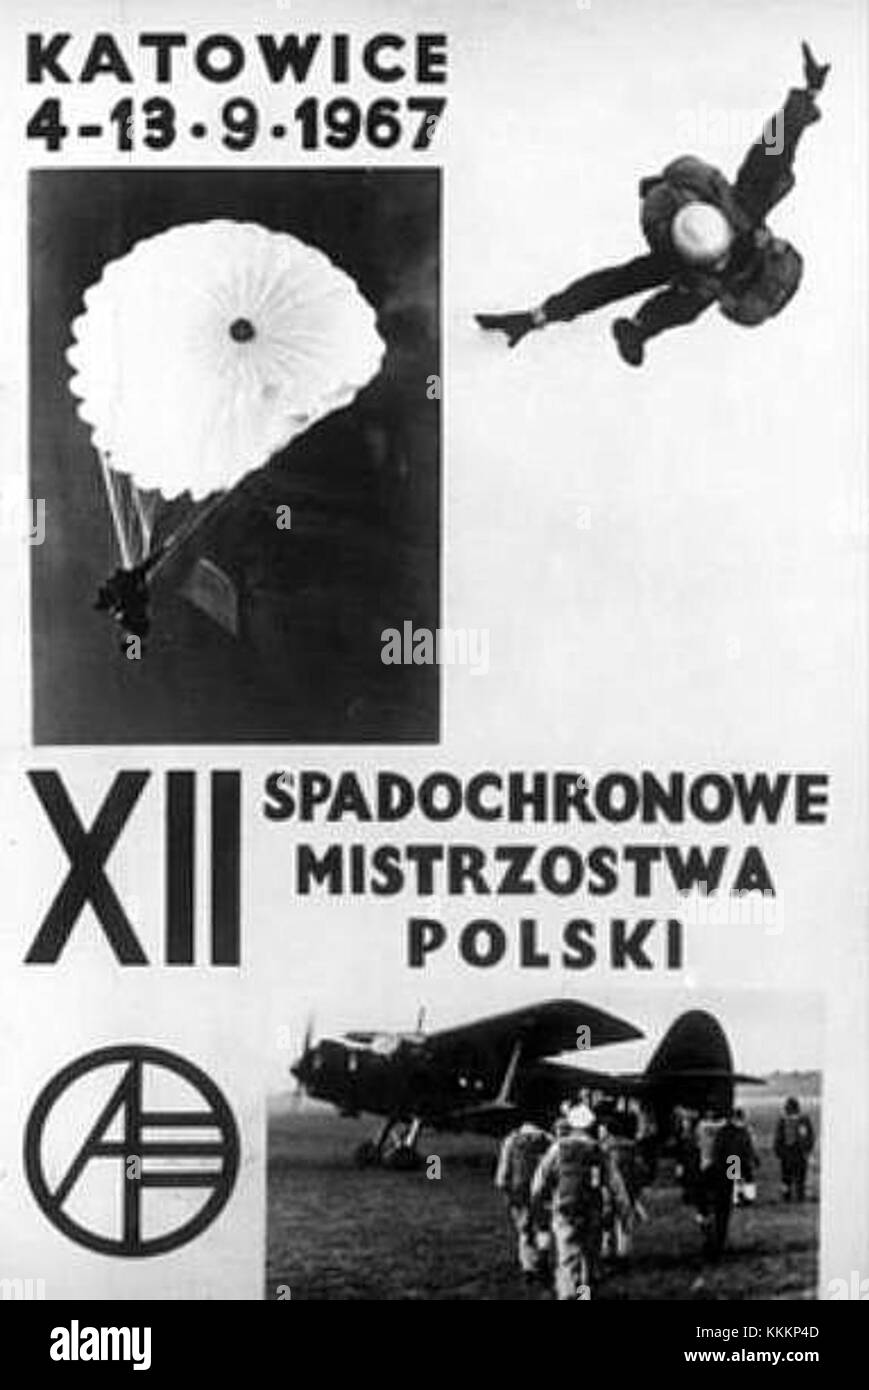 XII Spadochronowe Mistrzostwa Polski Katowice 1967-plakat Stock Photo